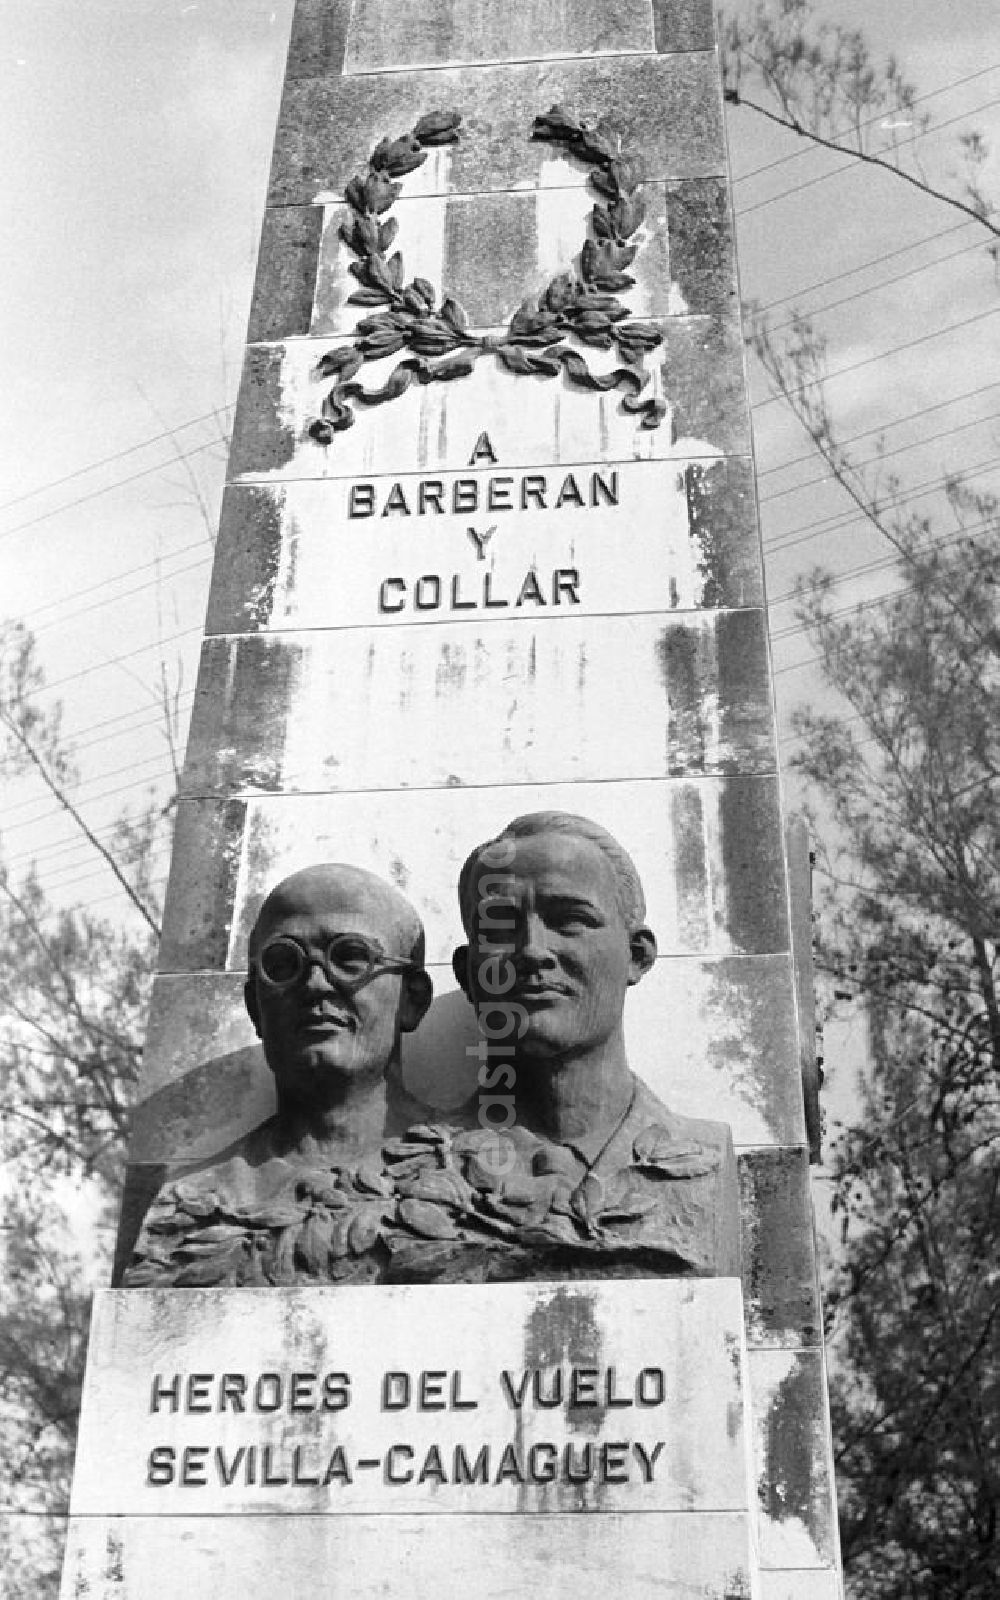 Camagüey: Ein Denkmal in Camagüey erinnert an die historisch bedeutsame Überquerung des Atlantischen Ozeans von Sevilla (Spanien) nach Camagüey (Kuba) durch die Piloten Mariano Barberán und Joaquín Collar.